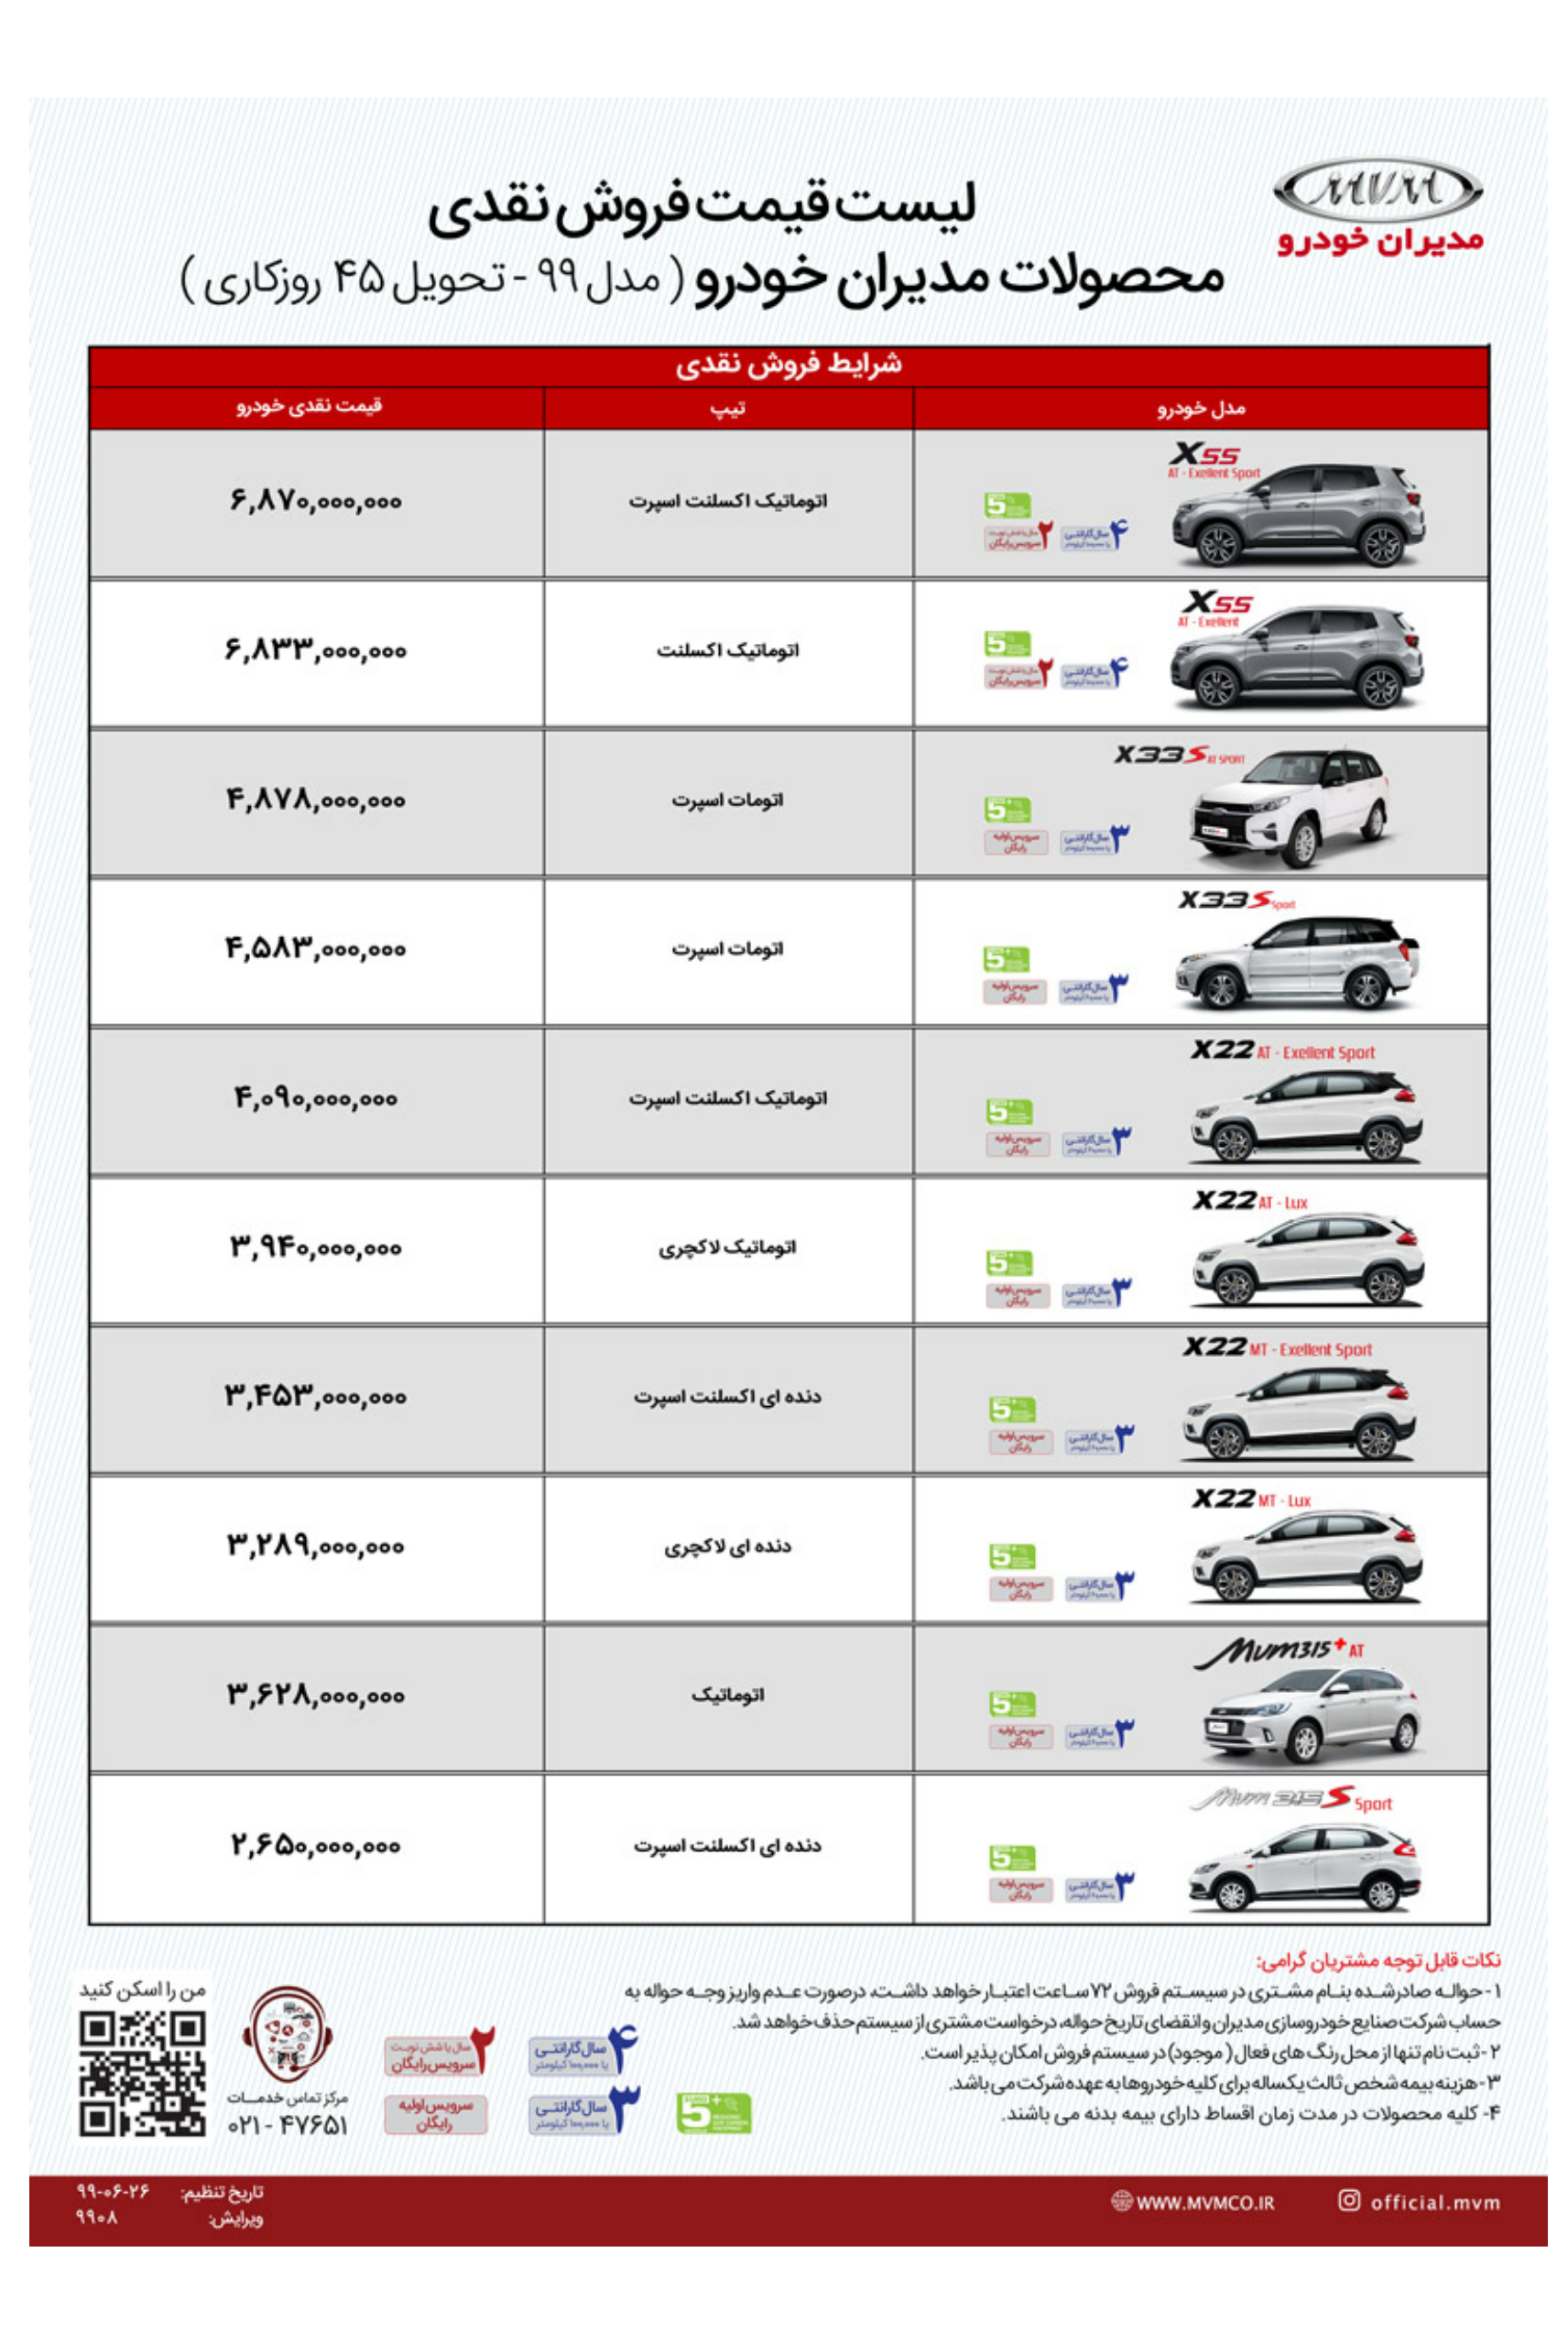 شرایط فروش و قیمت جدید محصولات مدیران خودرو + جدول (مهرماه ۹۹)